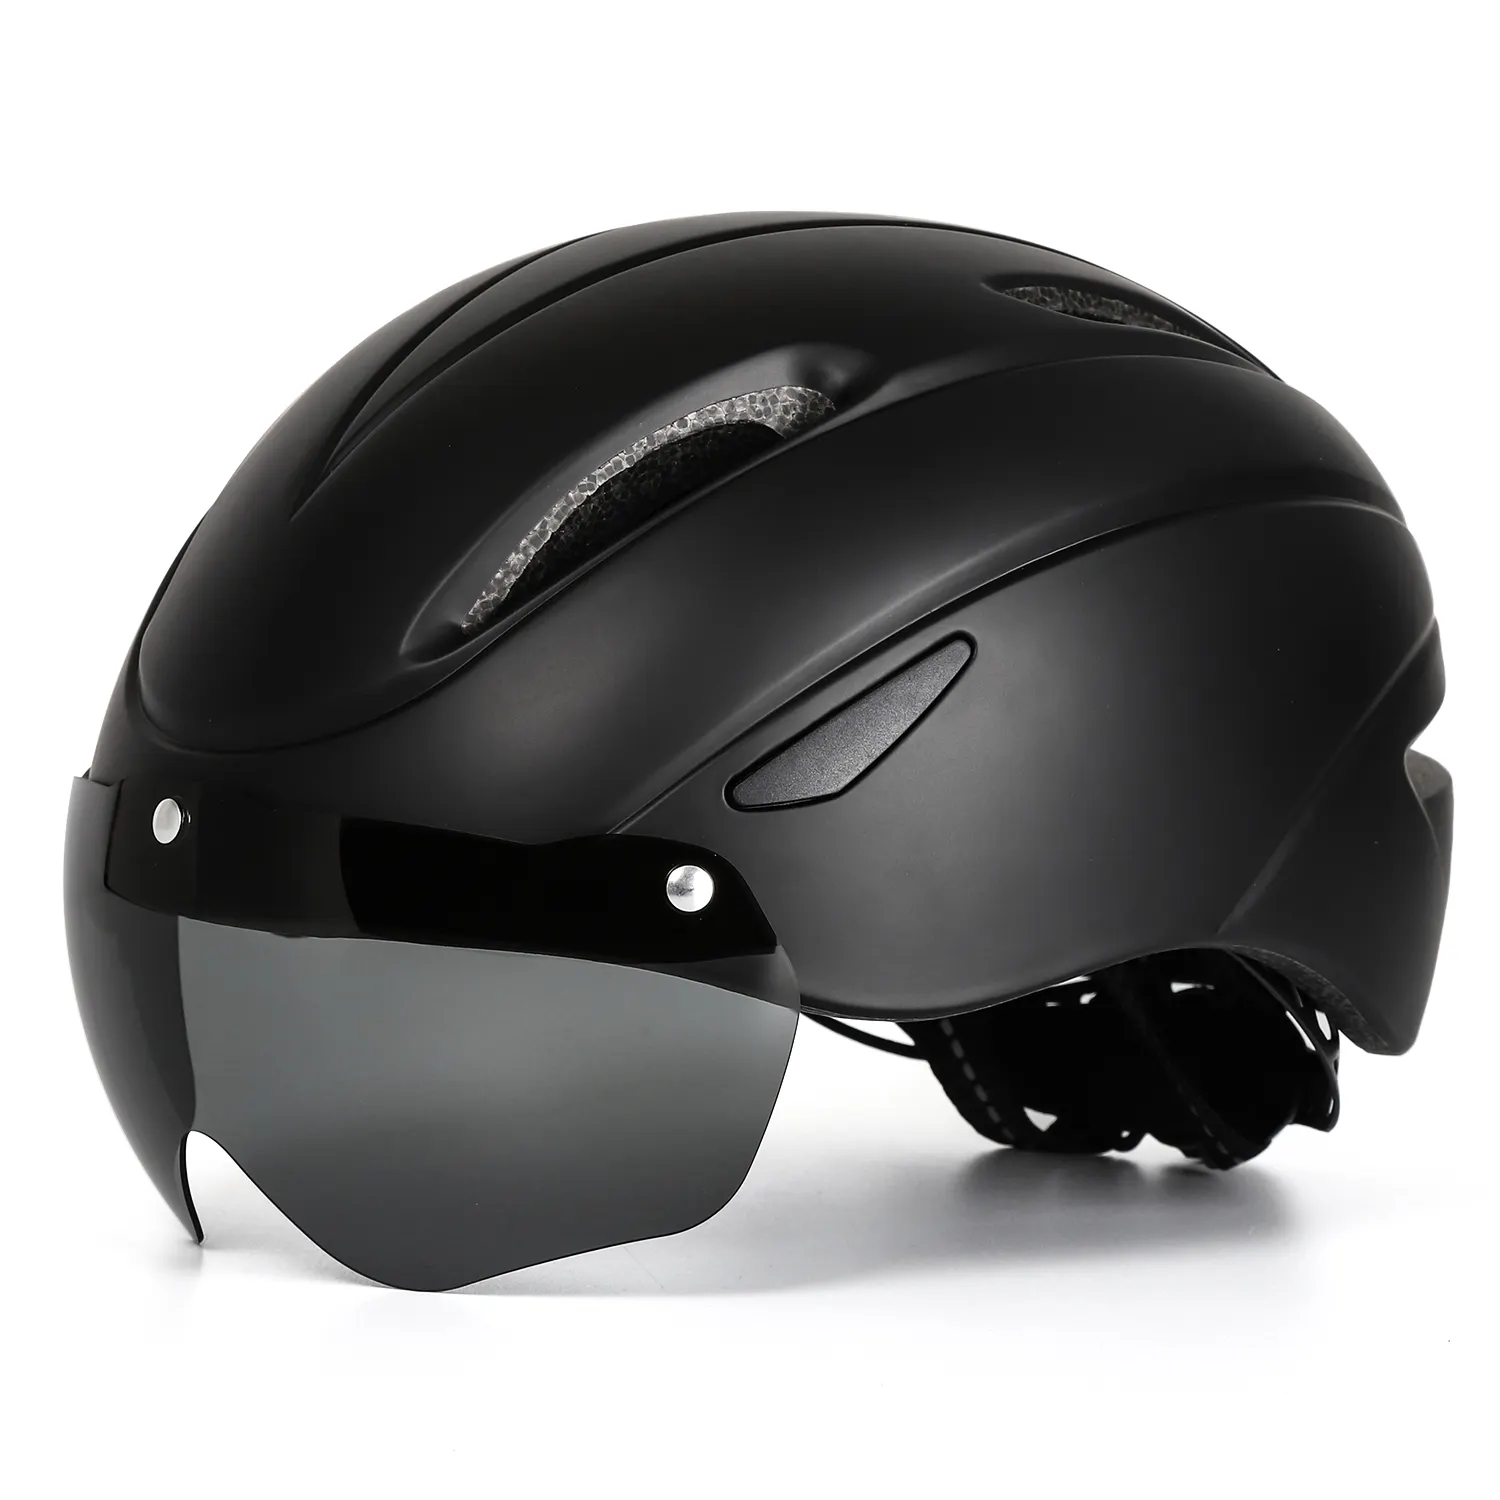 Casco protettivo uomo Dirt Bike caschi neri occhiali da sole moto ciclismo Skateboard arrampicata casco bici